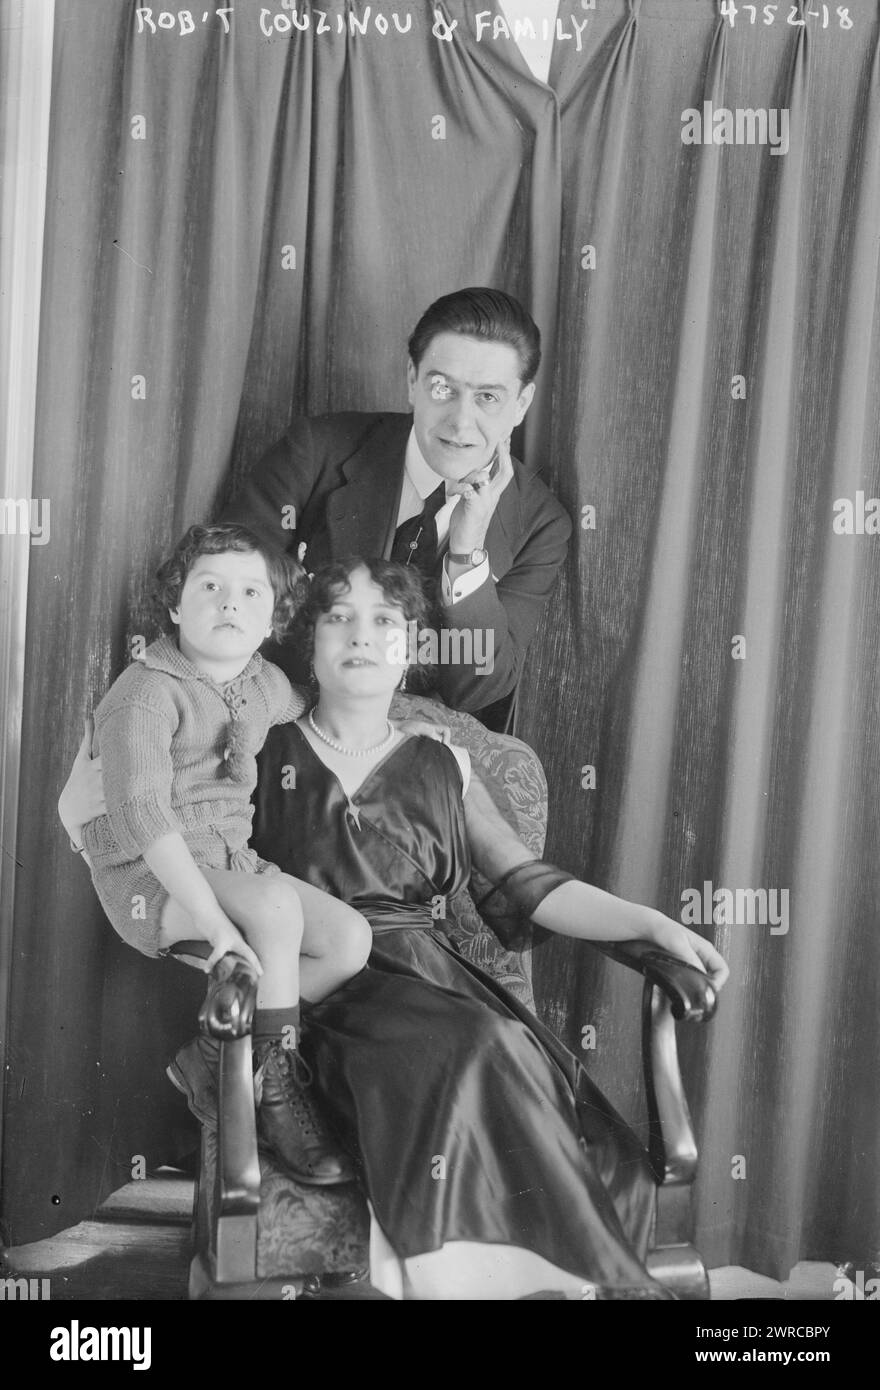 Rob't Couzinou et sa famille, photographie montre le chanteur d'opéra français Robert Couzinou (1888-1944) avec son épouse l'actrice française Antoinette Maury (1886-1945) et son enfant., entre env. 1915 et env. 1920, négatifs en verre, 1 négatif : verre Banque D'Images